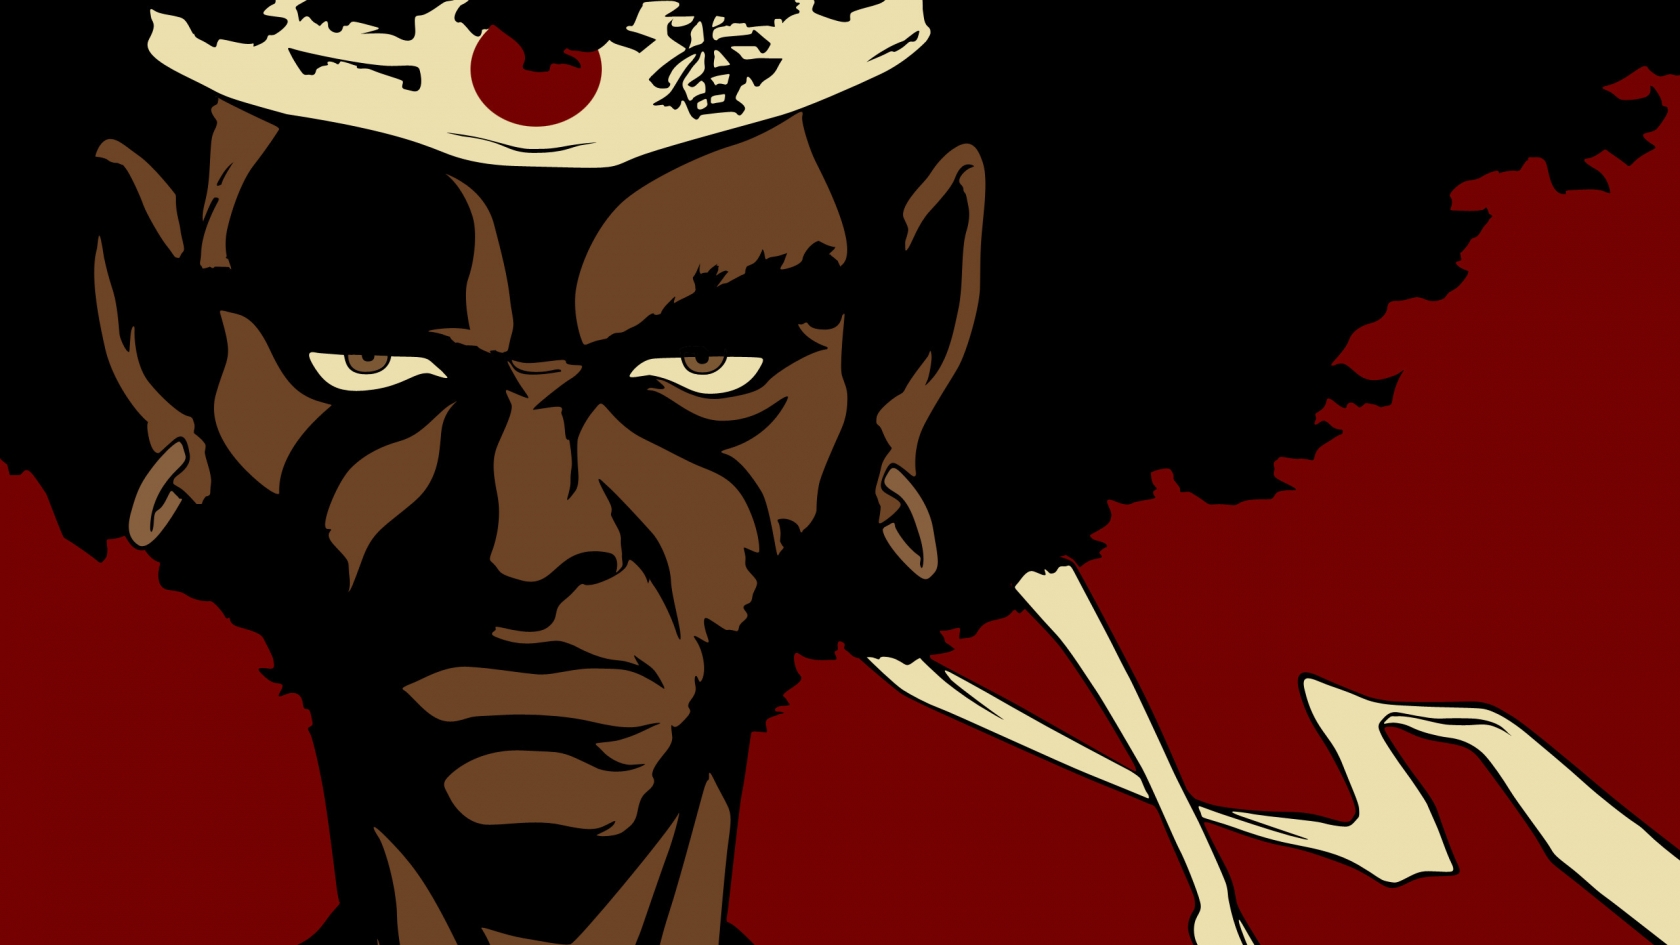 Afro Samurai Face for 1680 x 945 HDTV resolution